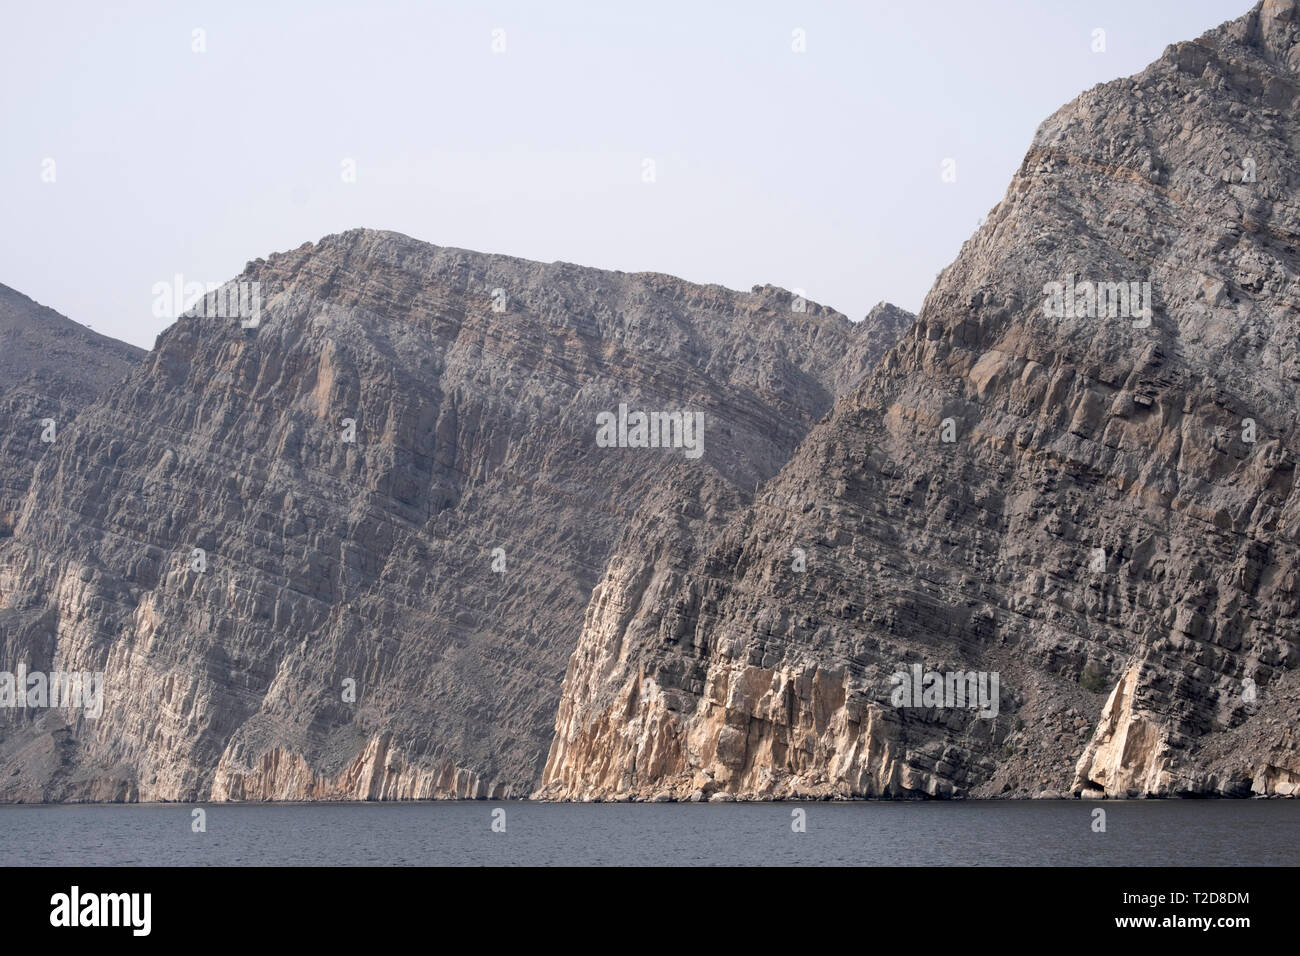 Montagnes Rocheuses de Musandam dans l'Oman Fjords Banque D'Images